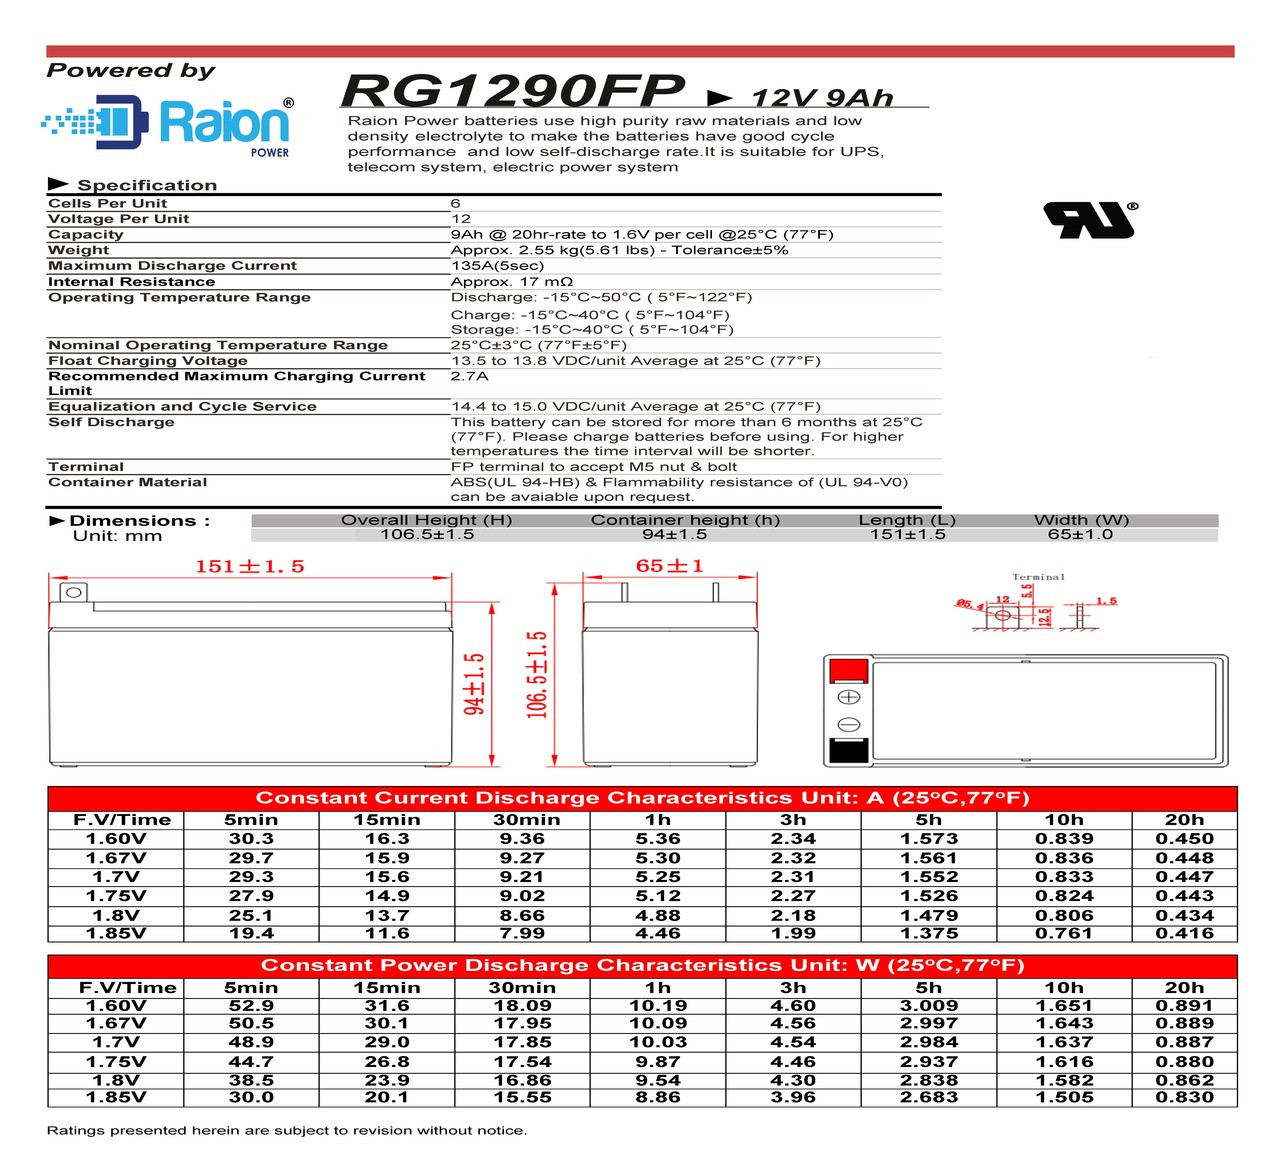 Raion Power 12V 9Ah Battery Data Sheet for Peak PKC0P6 600 Peak Amp